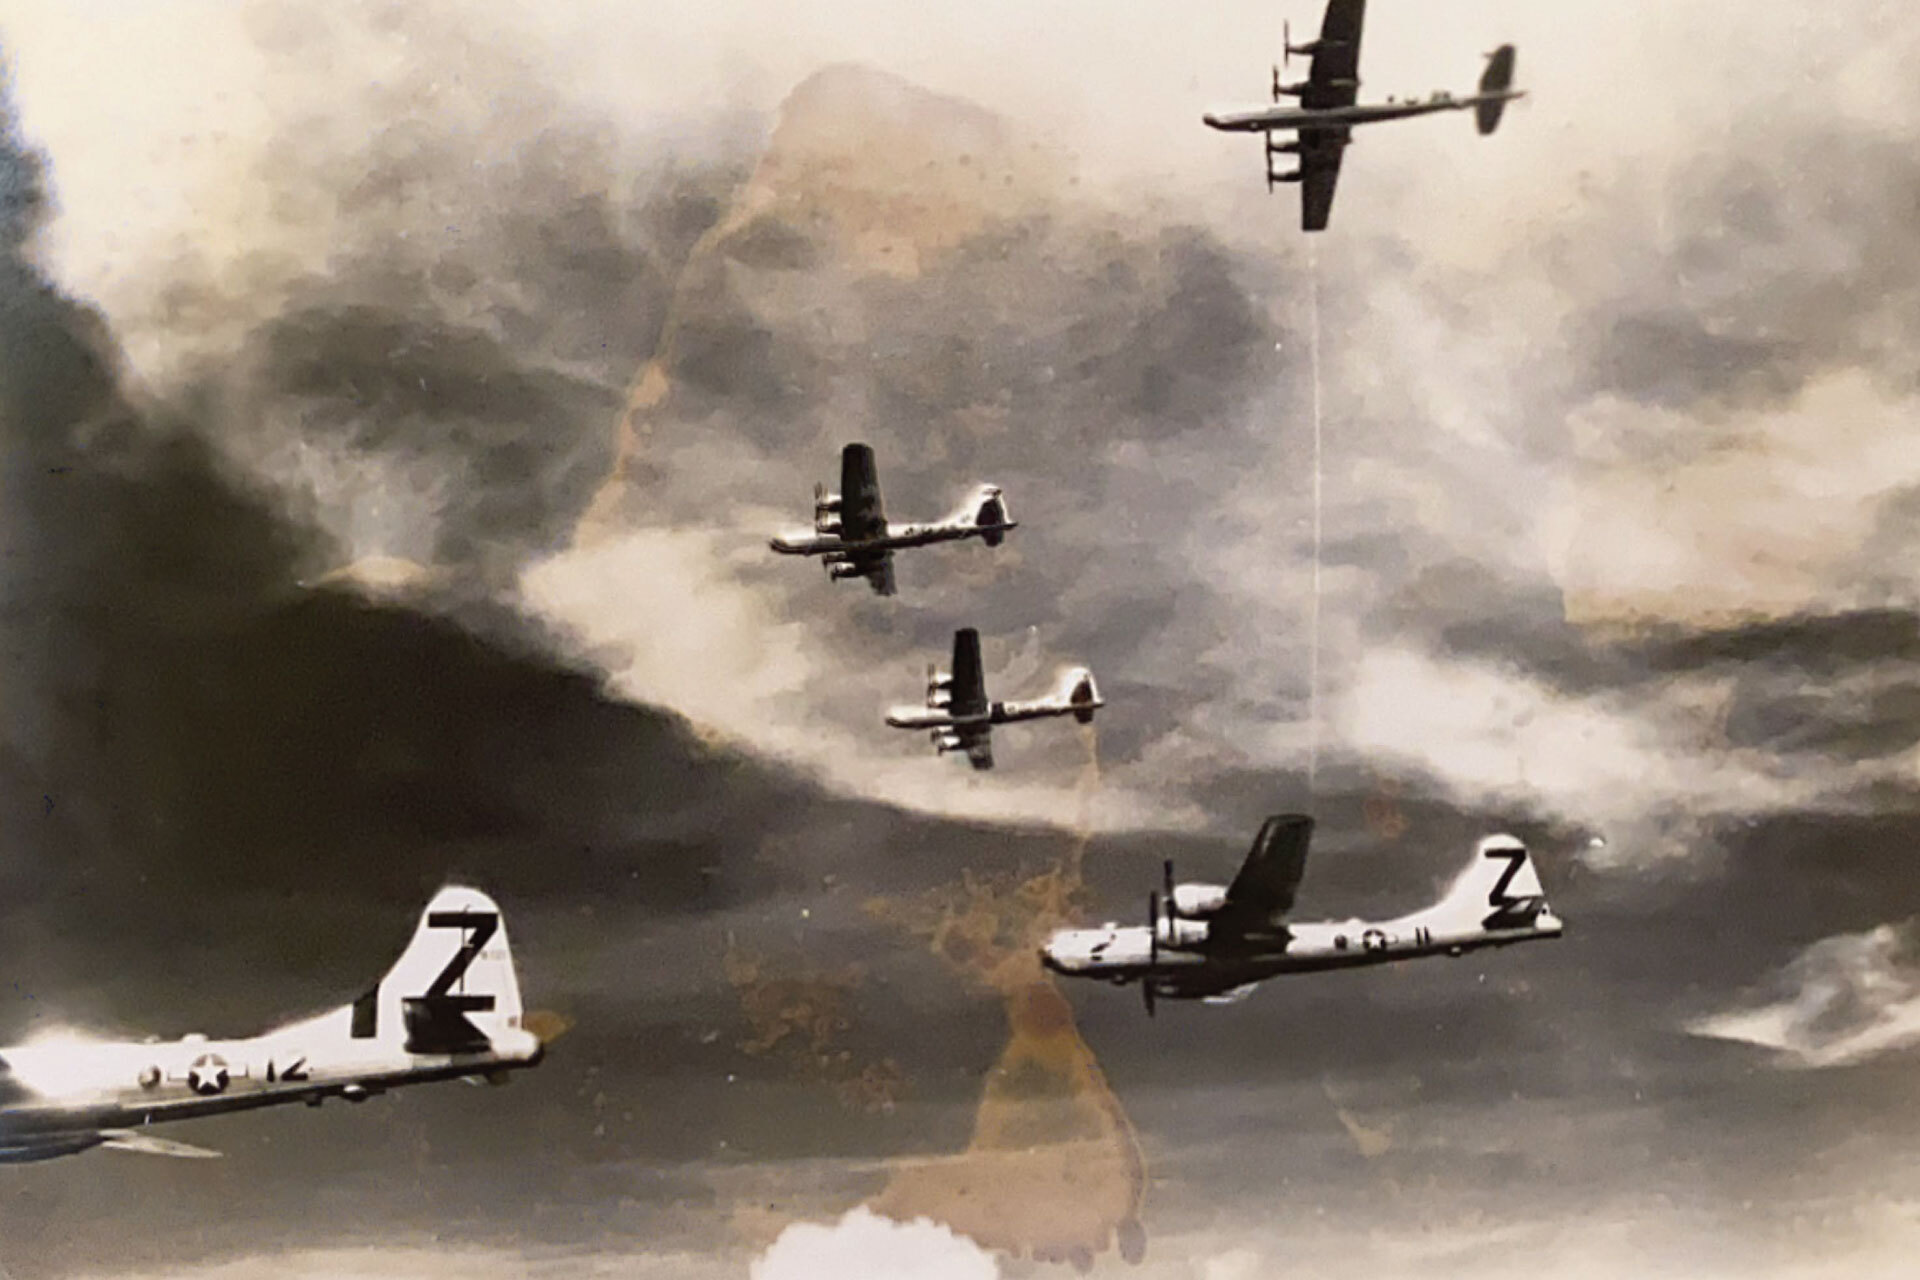 제2차 세계대전 당시 상공을 날고 있는 두 대의 비행기가 보이는 오래된 사진의 스캔본